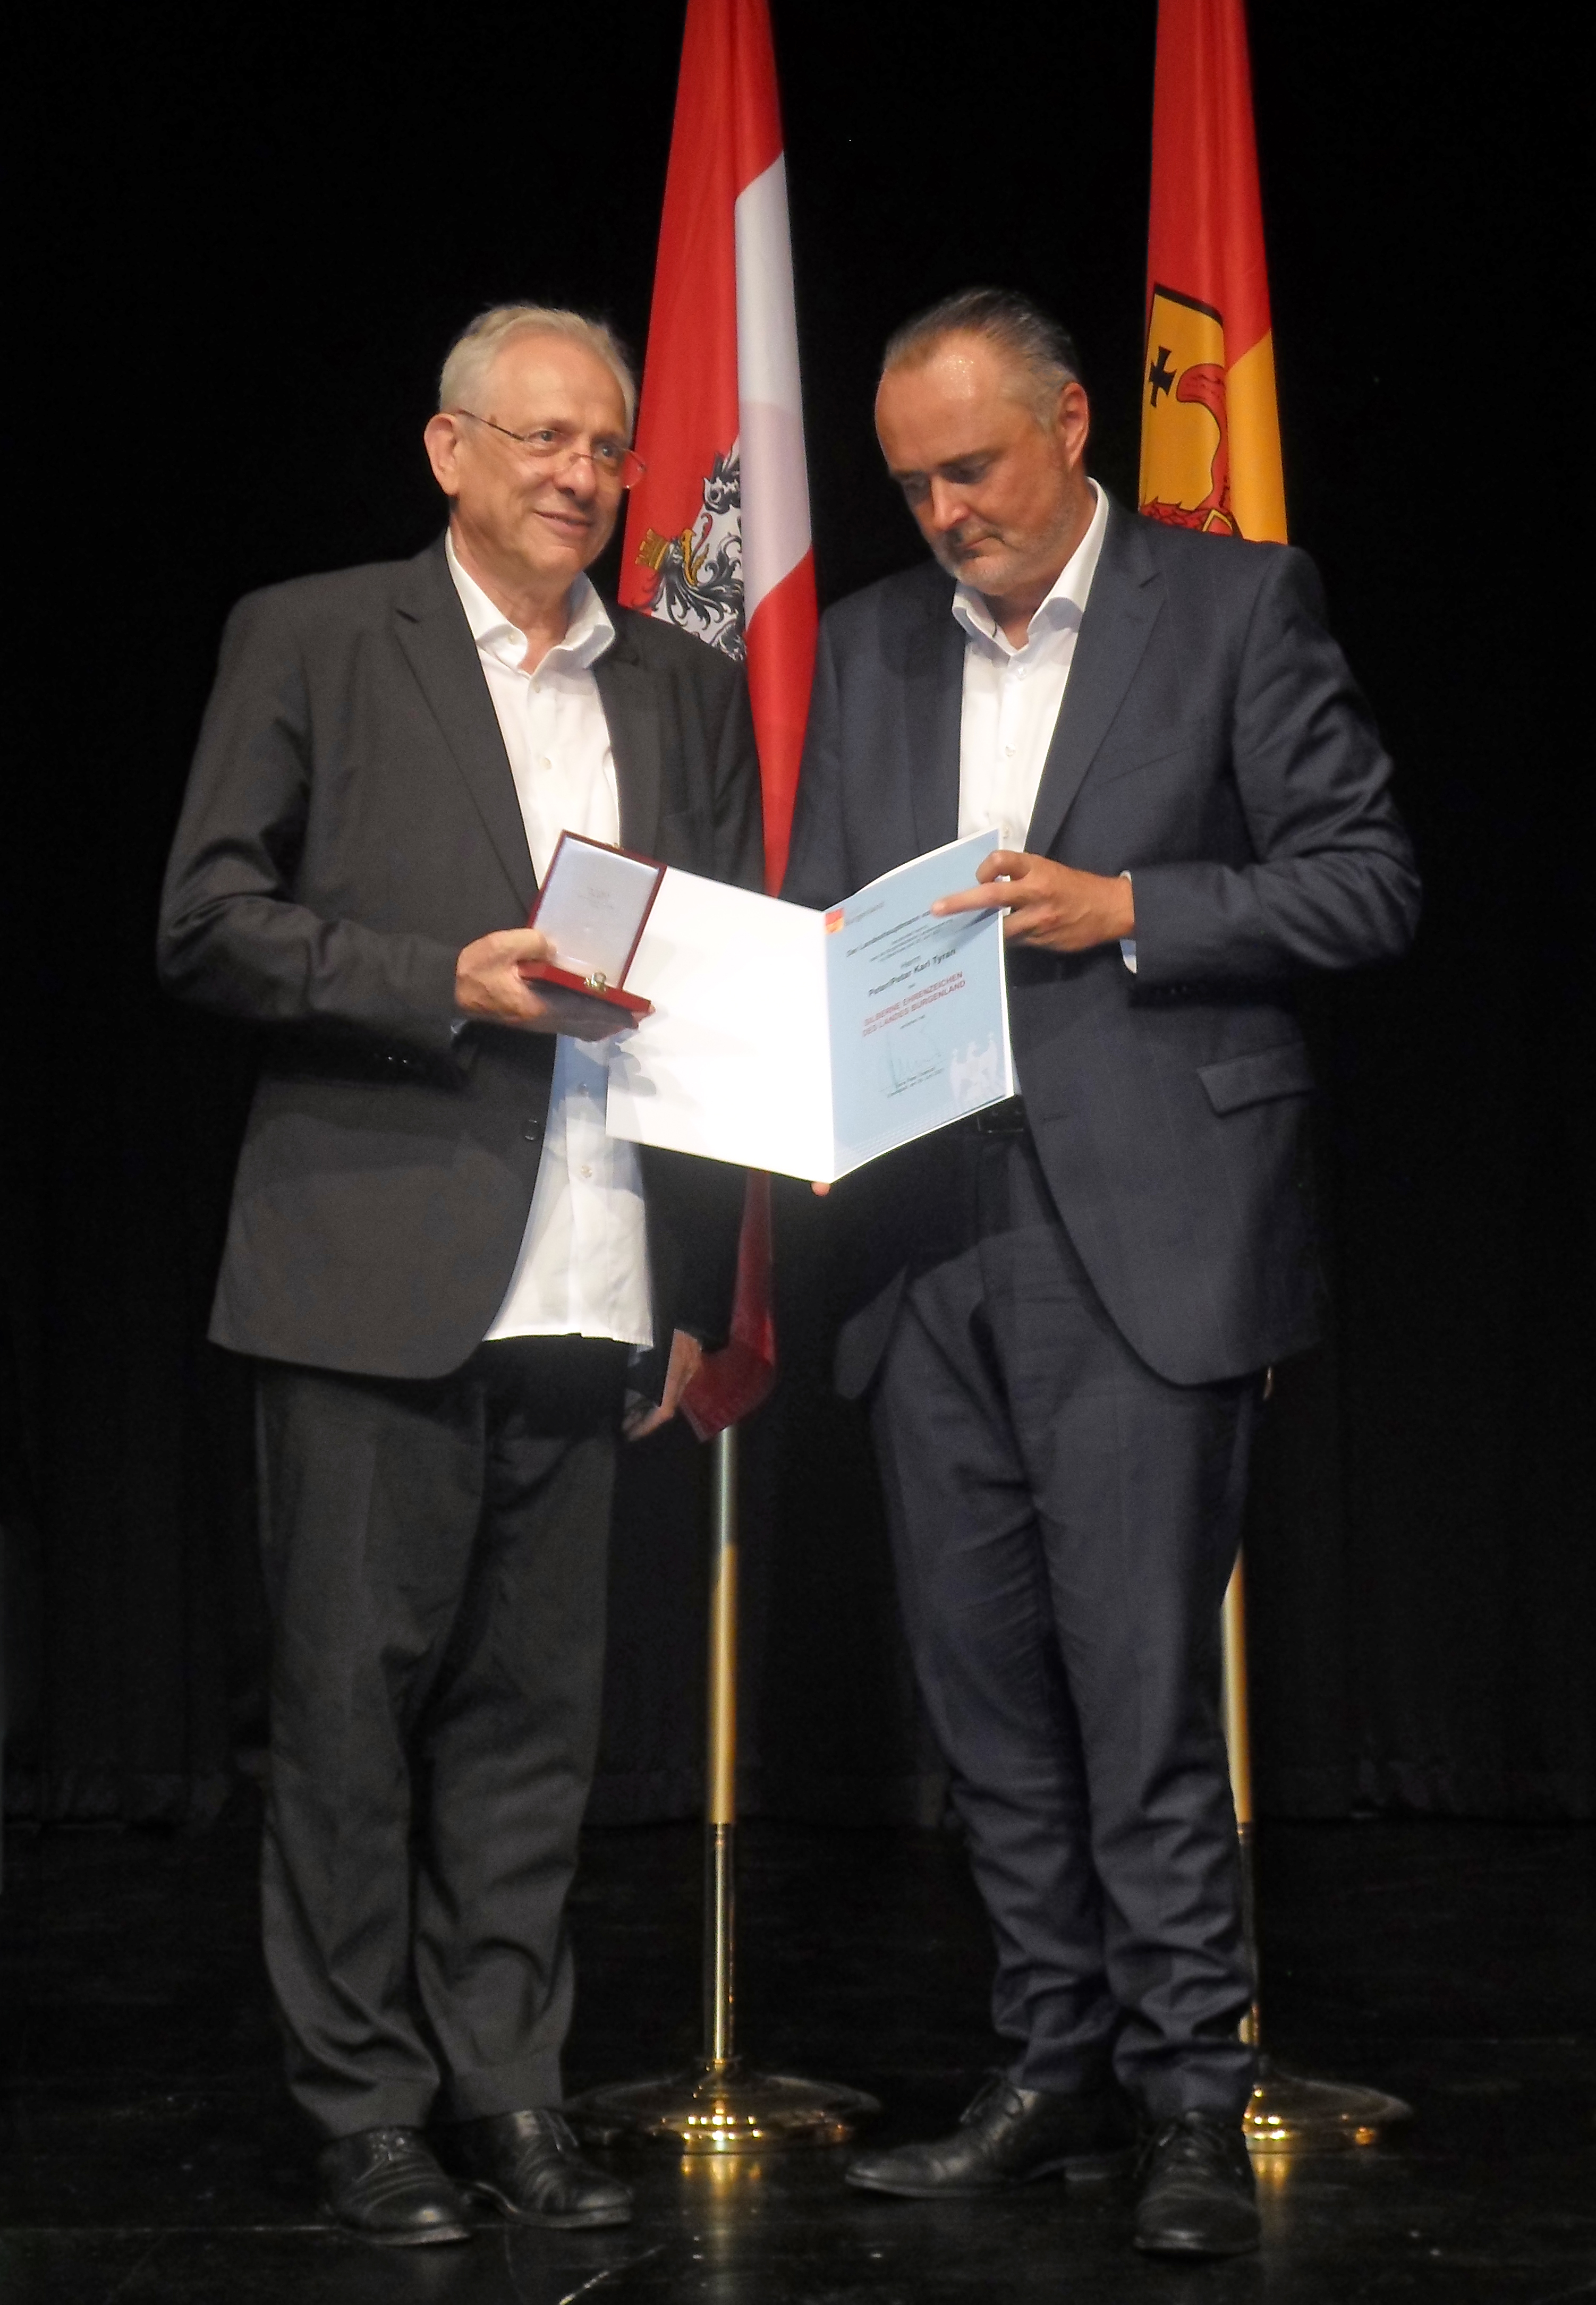 Petar Tyran mit dem Silbernen Ehrenzeichen des Landes Burgenland geehrt